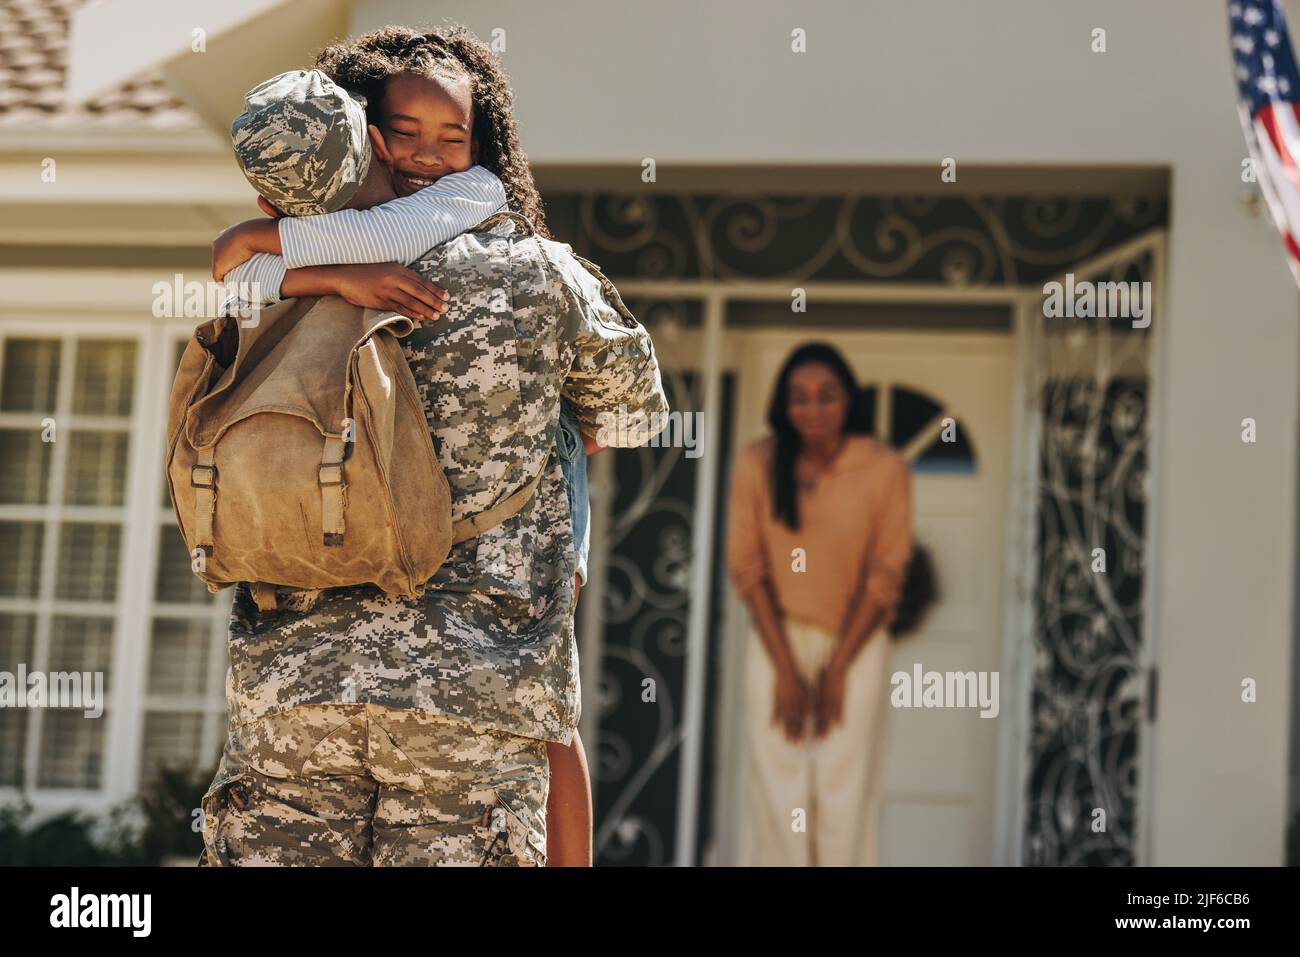 Soldat de l'armée embrassant sa fille après son retour à la maison. Un militaire américain surprend sa femme et sa fille à son retour. Militaire homme resuniti Banque D'Images